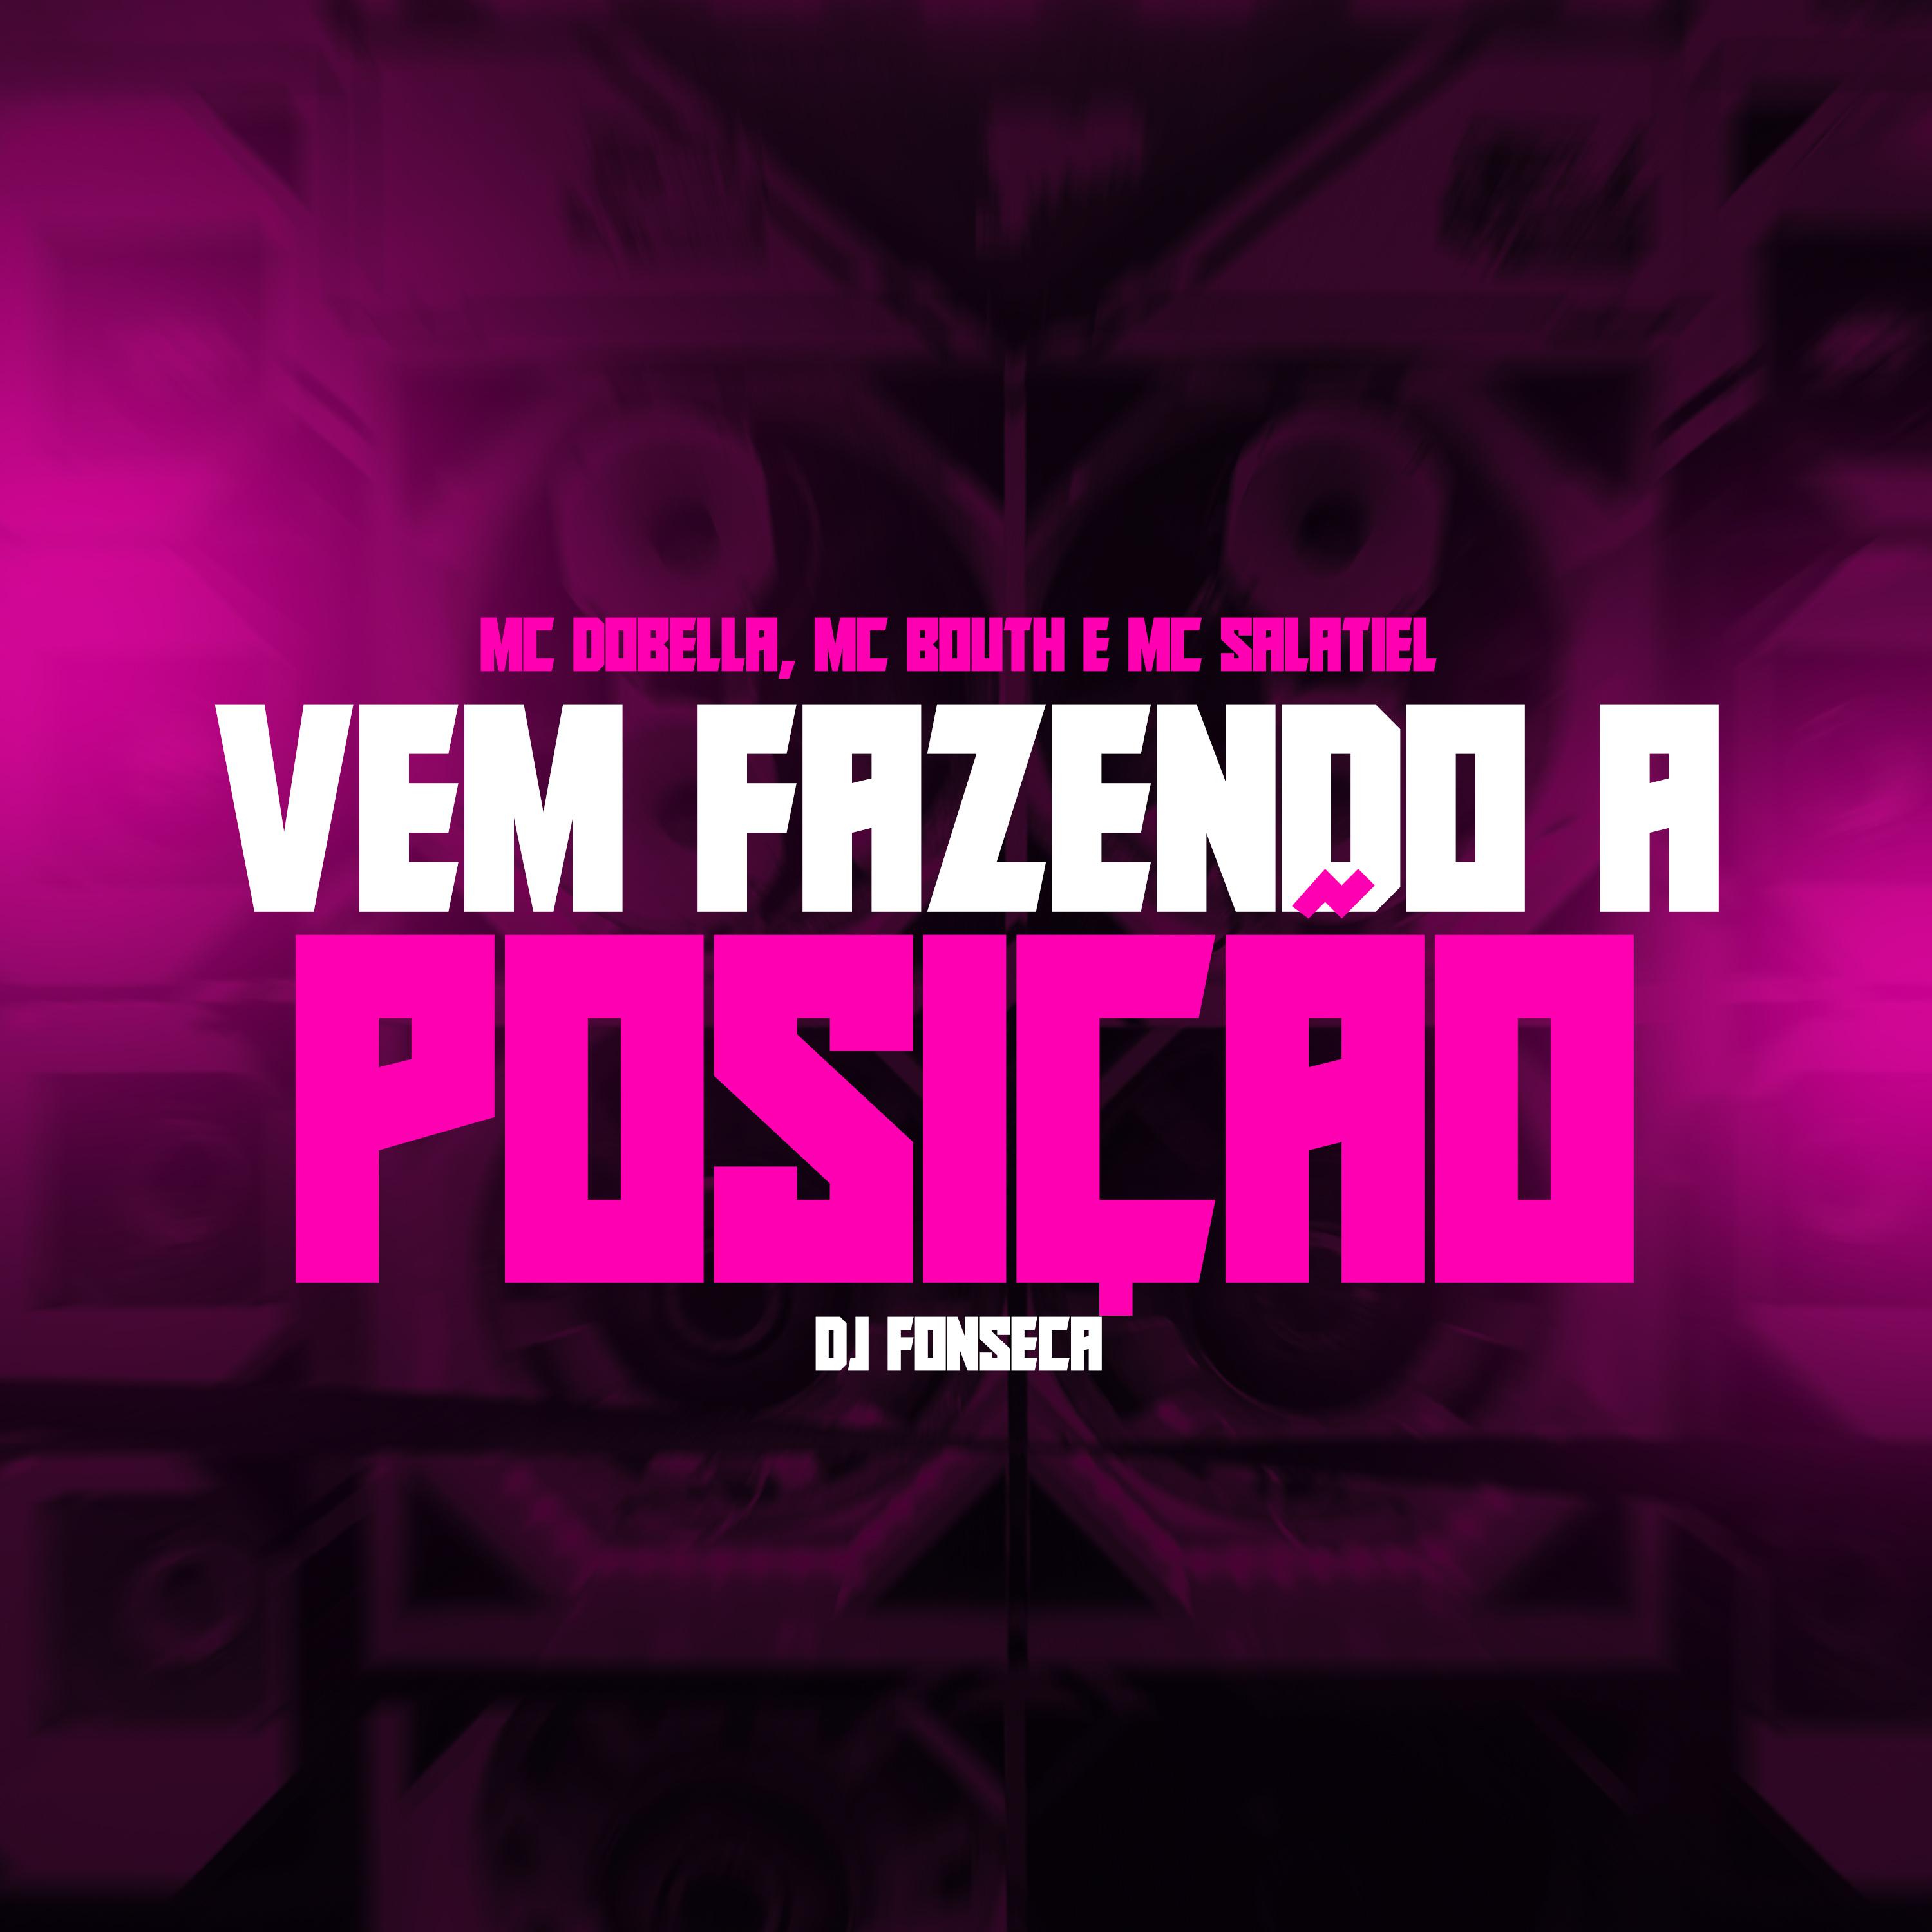 DJ Fonseca - Vem Fazendo a Posição